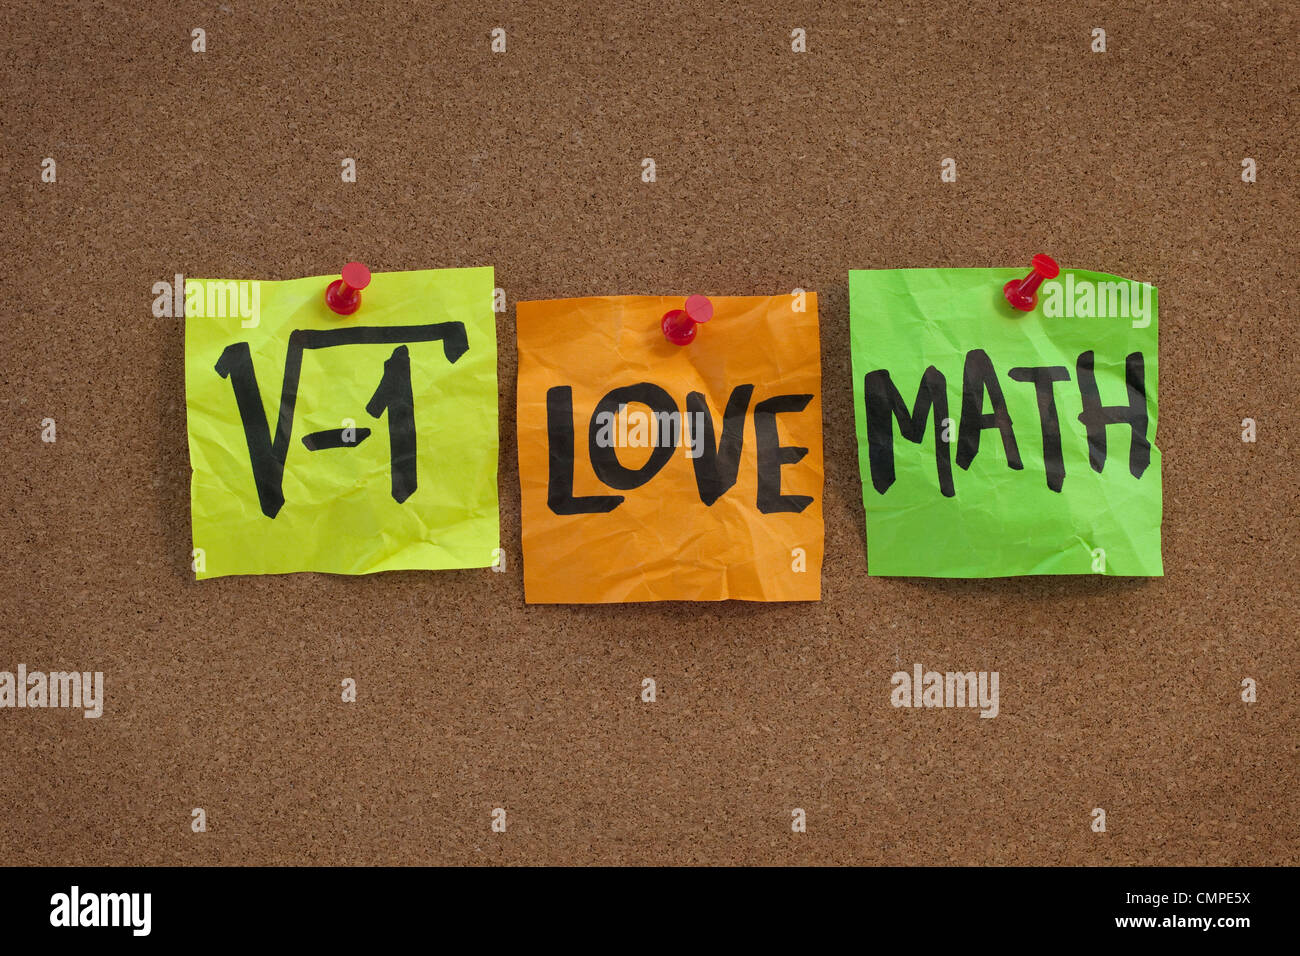 La radice quadrata di un numero negativo - Io amo la matematica concetto divertente e colorata Sticky Notes, la grafia sul sughero bulletin board Foto Stock